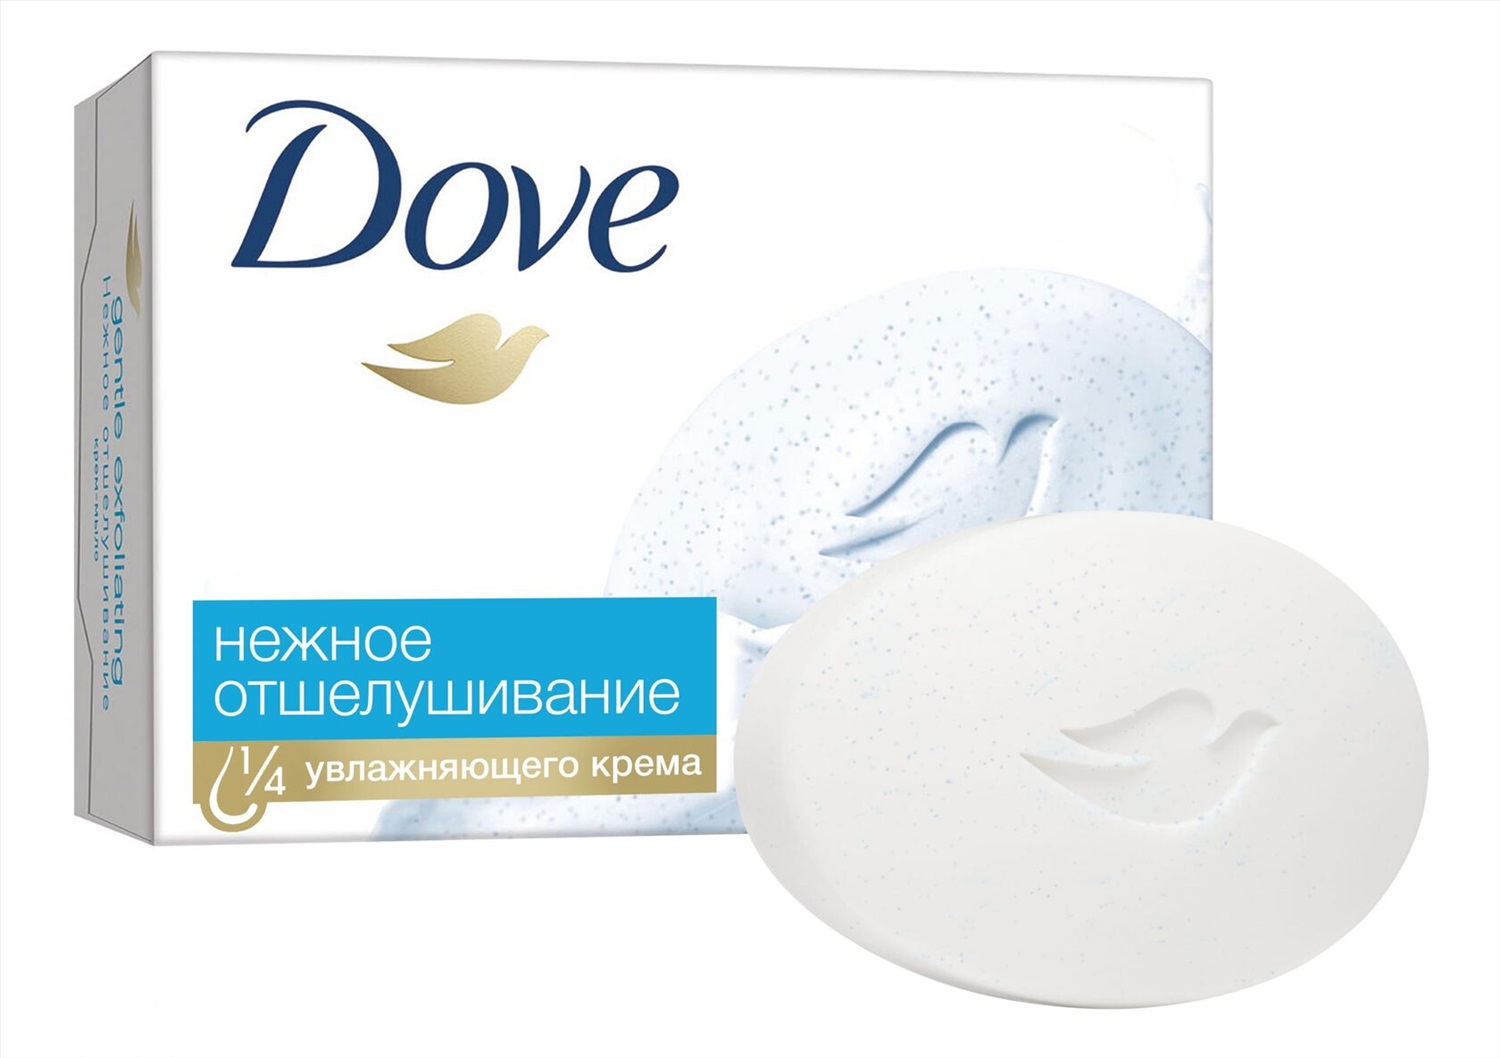 Туалетная мыло дав. Крем-мыло dove, нежное отшелушивание, 100гр. Мыло дав 135г нежное отшелушивание. Dove мыло отшелушивающее. Мыло дав гипоаллергенное.